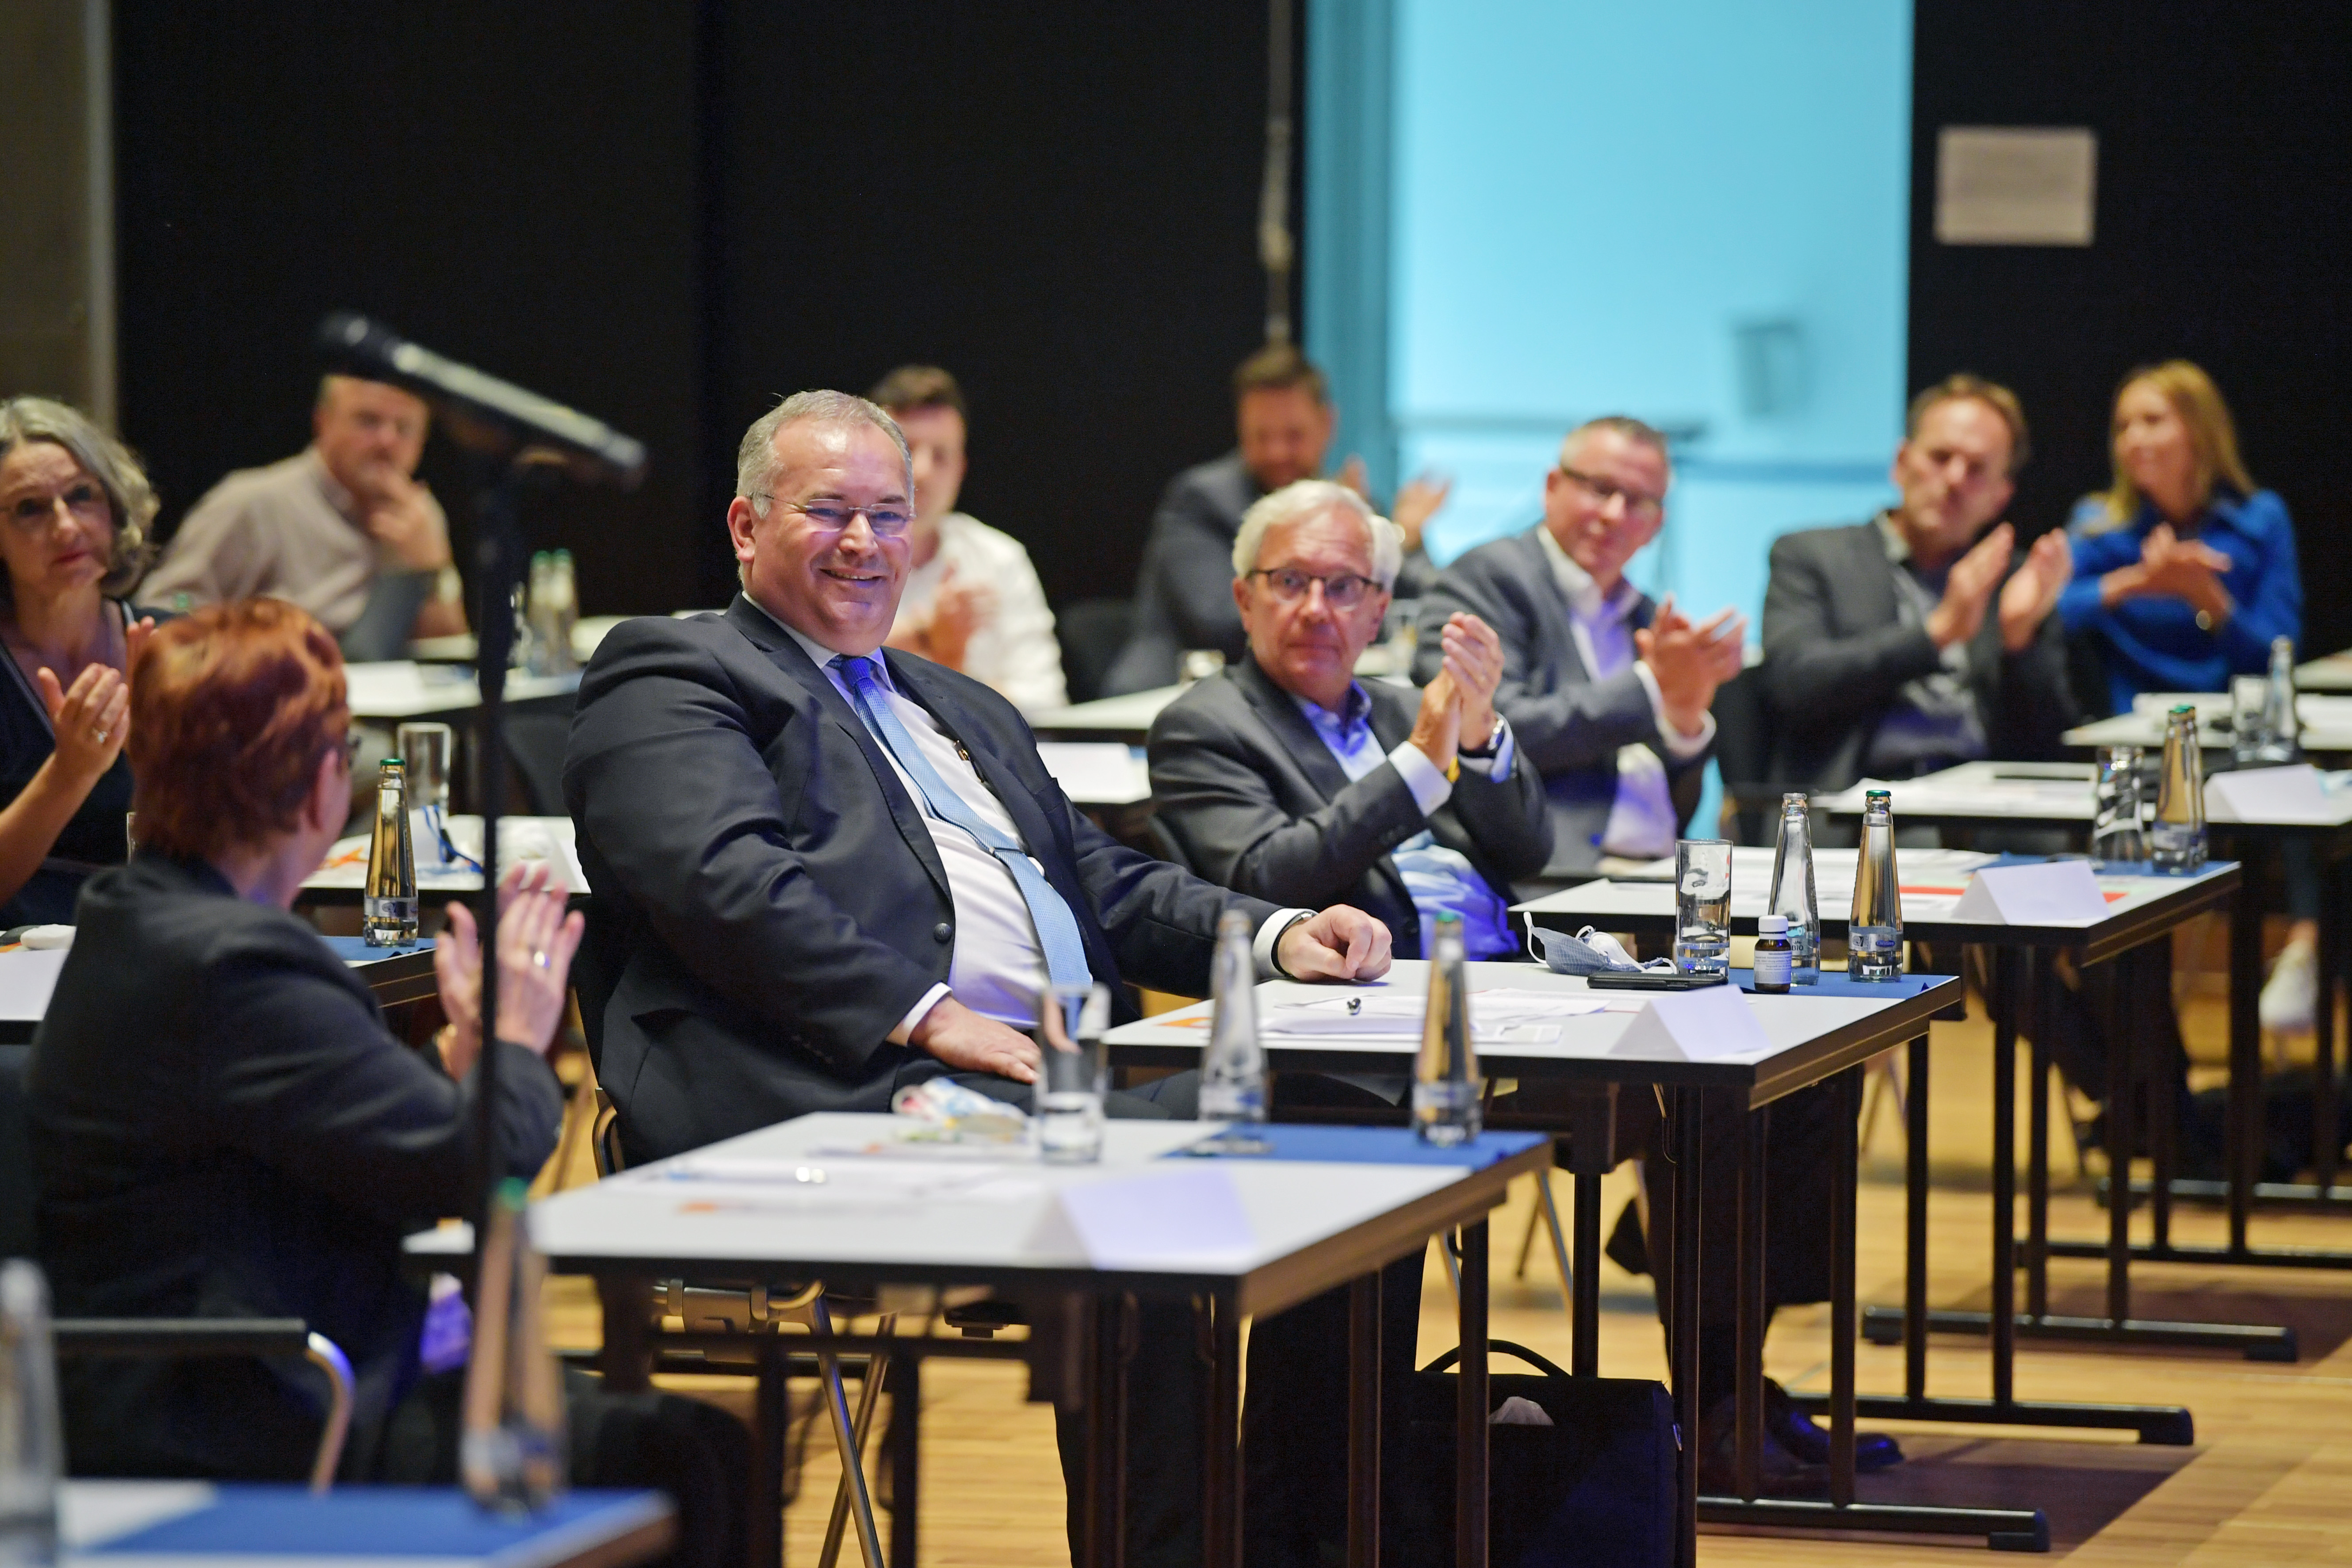 18.61.2020 - Parteitag - Nominierung Oberbürgermeister - Ralf Nettelstroth ist mit 97% zum Oberbürgermeisterkandidaten von den Mitliedern gewählt worden. (Foto: Thomas F. Starke)